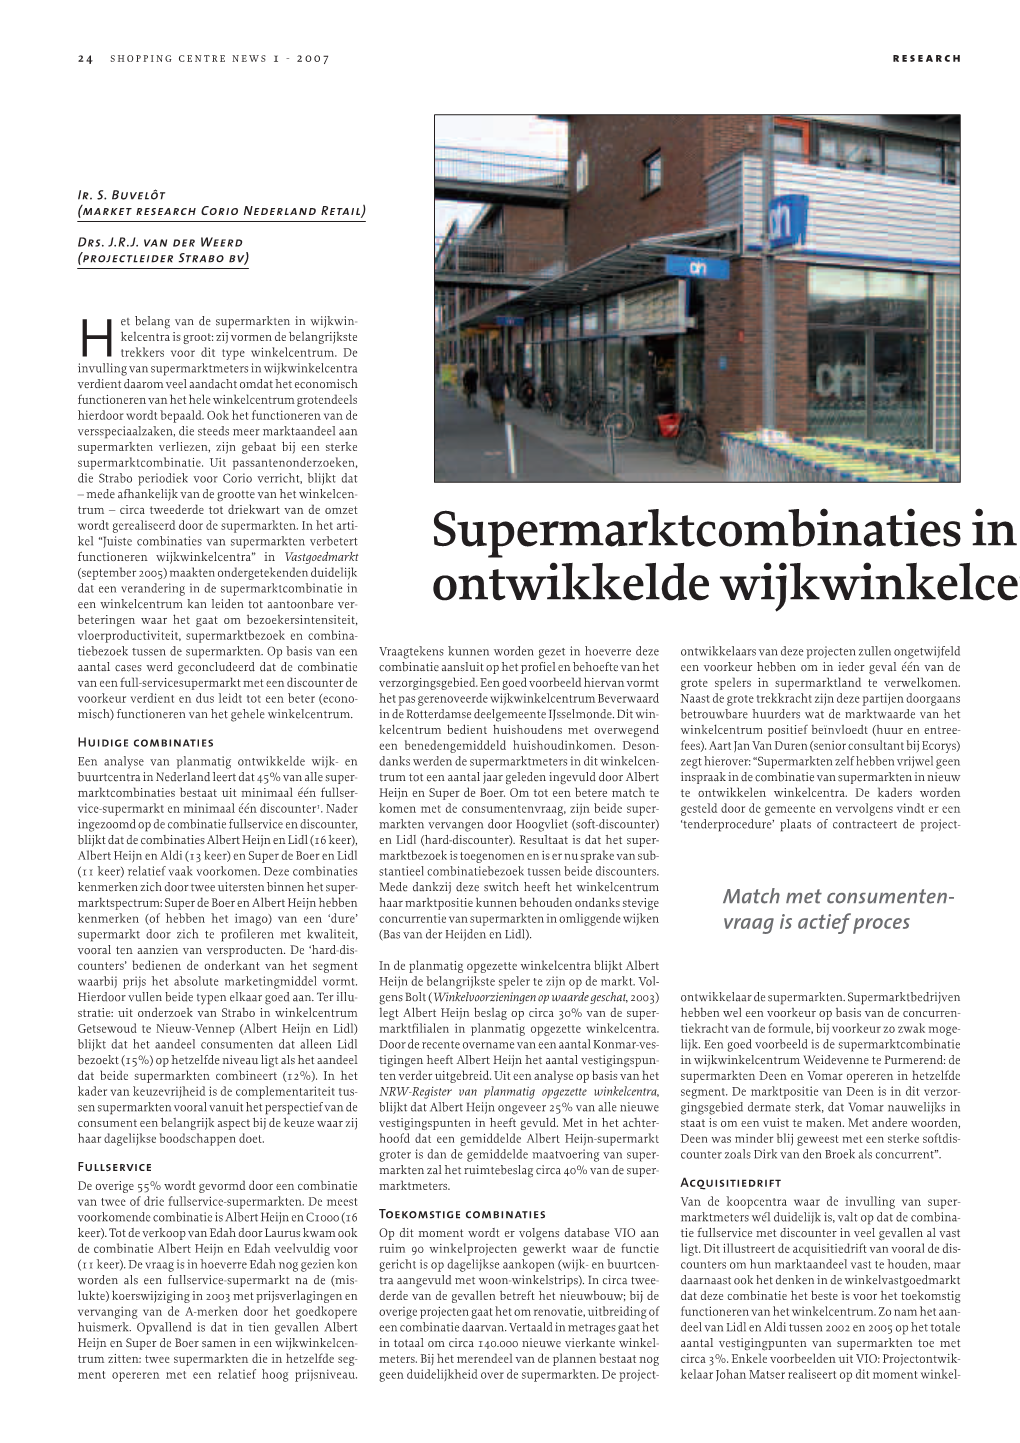 Supermarktcombinaties in Planmatig Ontwikkelde Wijkwinkelcentra